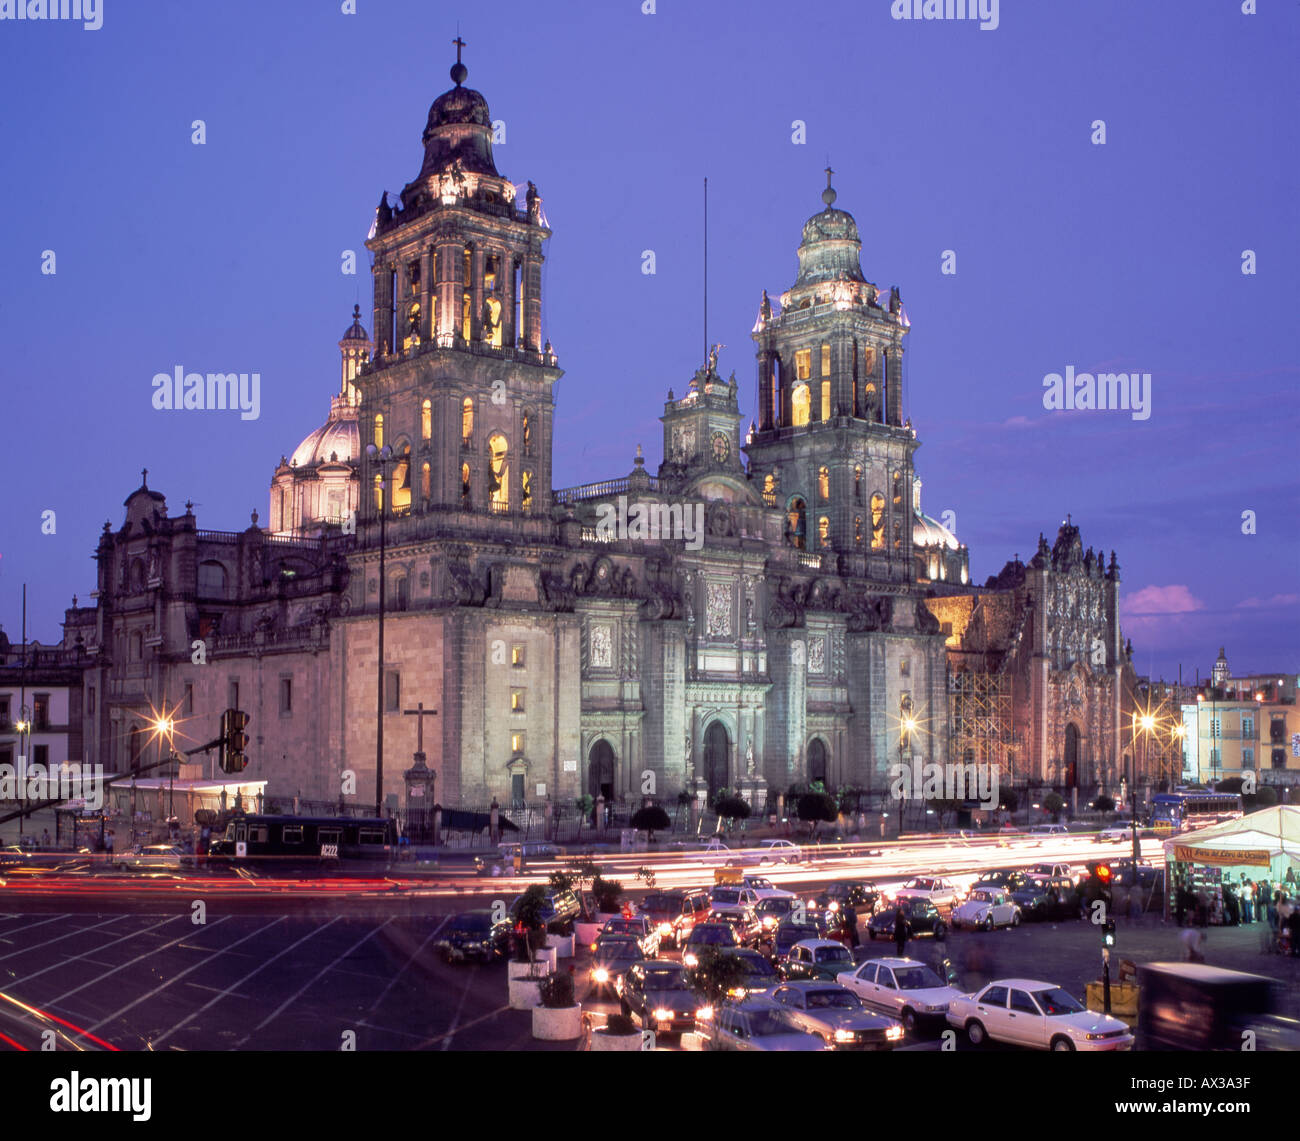 Mexico City Plaza Zocalo et de la cathédrale de Mexico à l'heure de pointe au crépuscule vue depuis la terrasse de l'hôtel majestic Banque D'Images